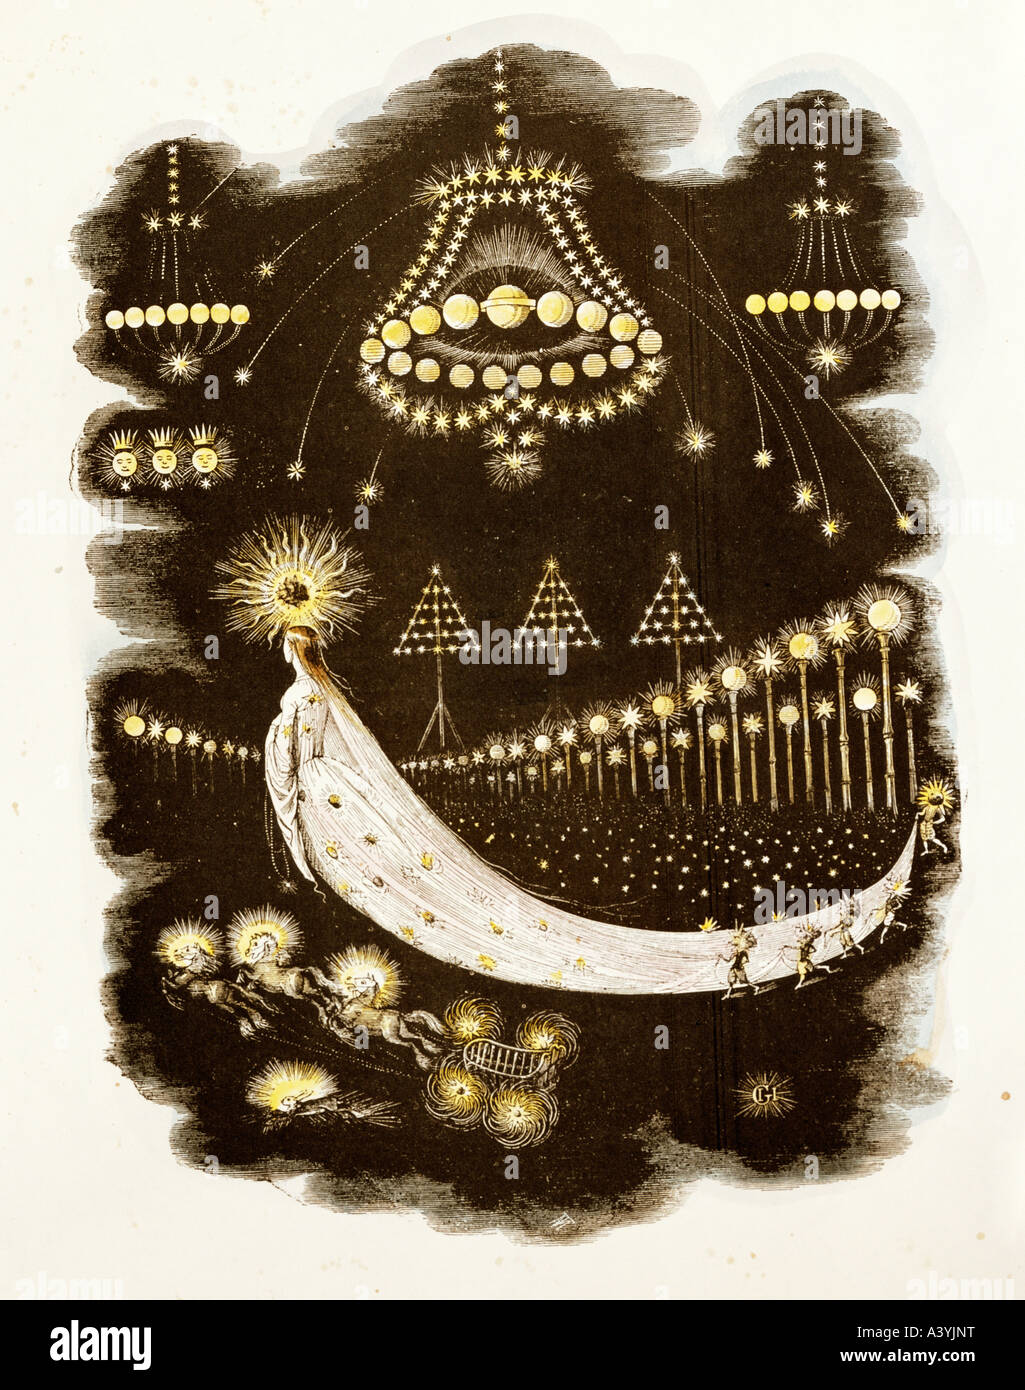 Astronomie, planètes, 'comet traversant le ciel nocturne', gravure en couleur, par Grandville, nom de naissance Jean Ignace Isidore Gerard (1803 - 1847), de 'une autre', Paris, 1844, collection privée, , Banque D'Images